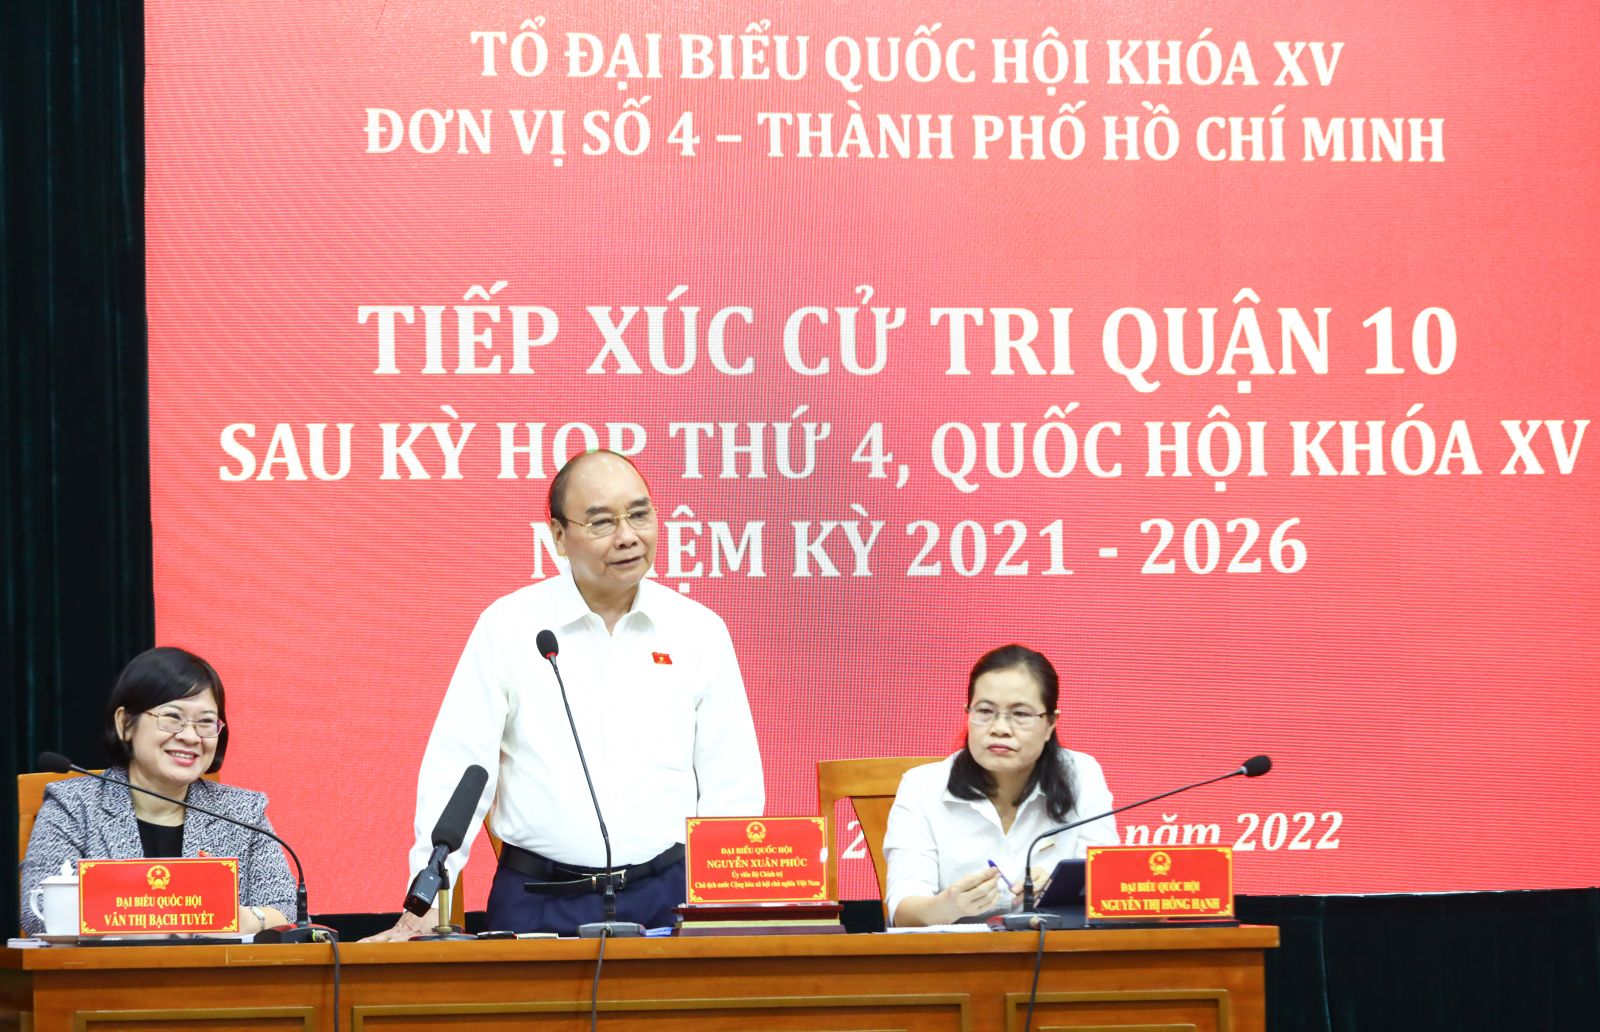 Chủ tịch nước Nguyễn Xuân Phúc tiếp xúc cử tri Quận 10, thành phố Hồ Chí Minh - Ảnh 3.